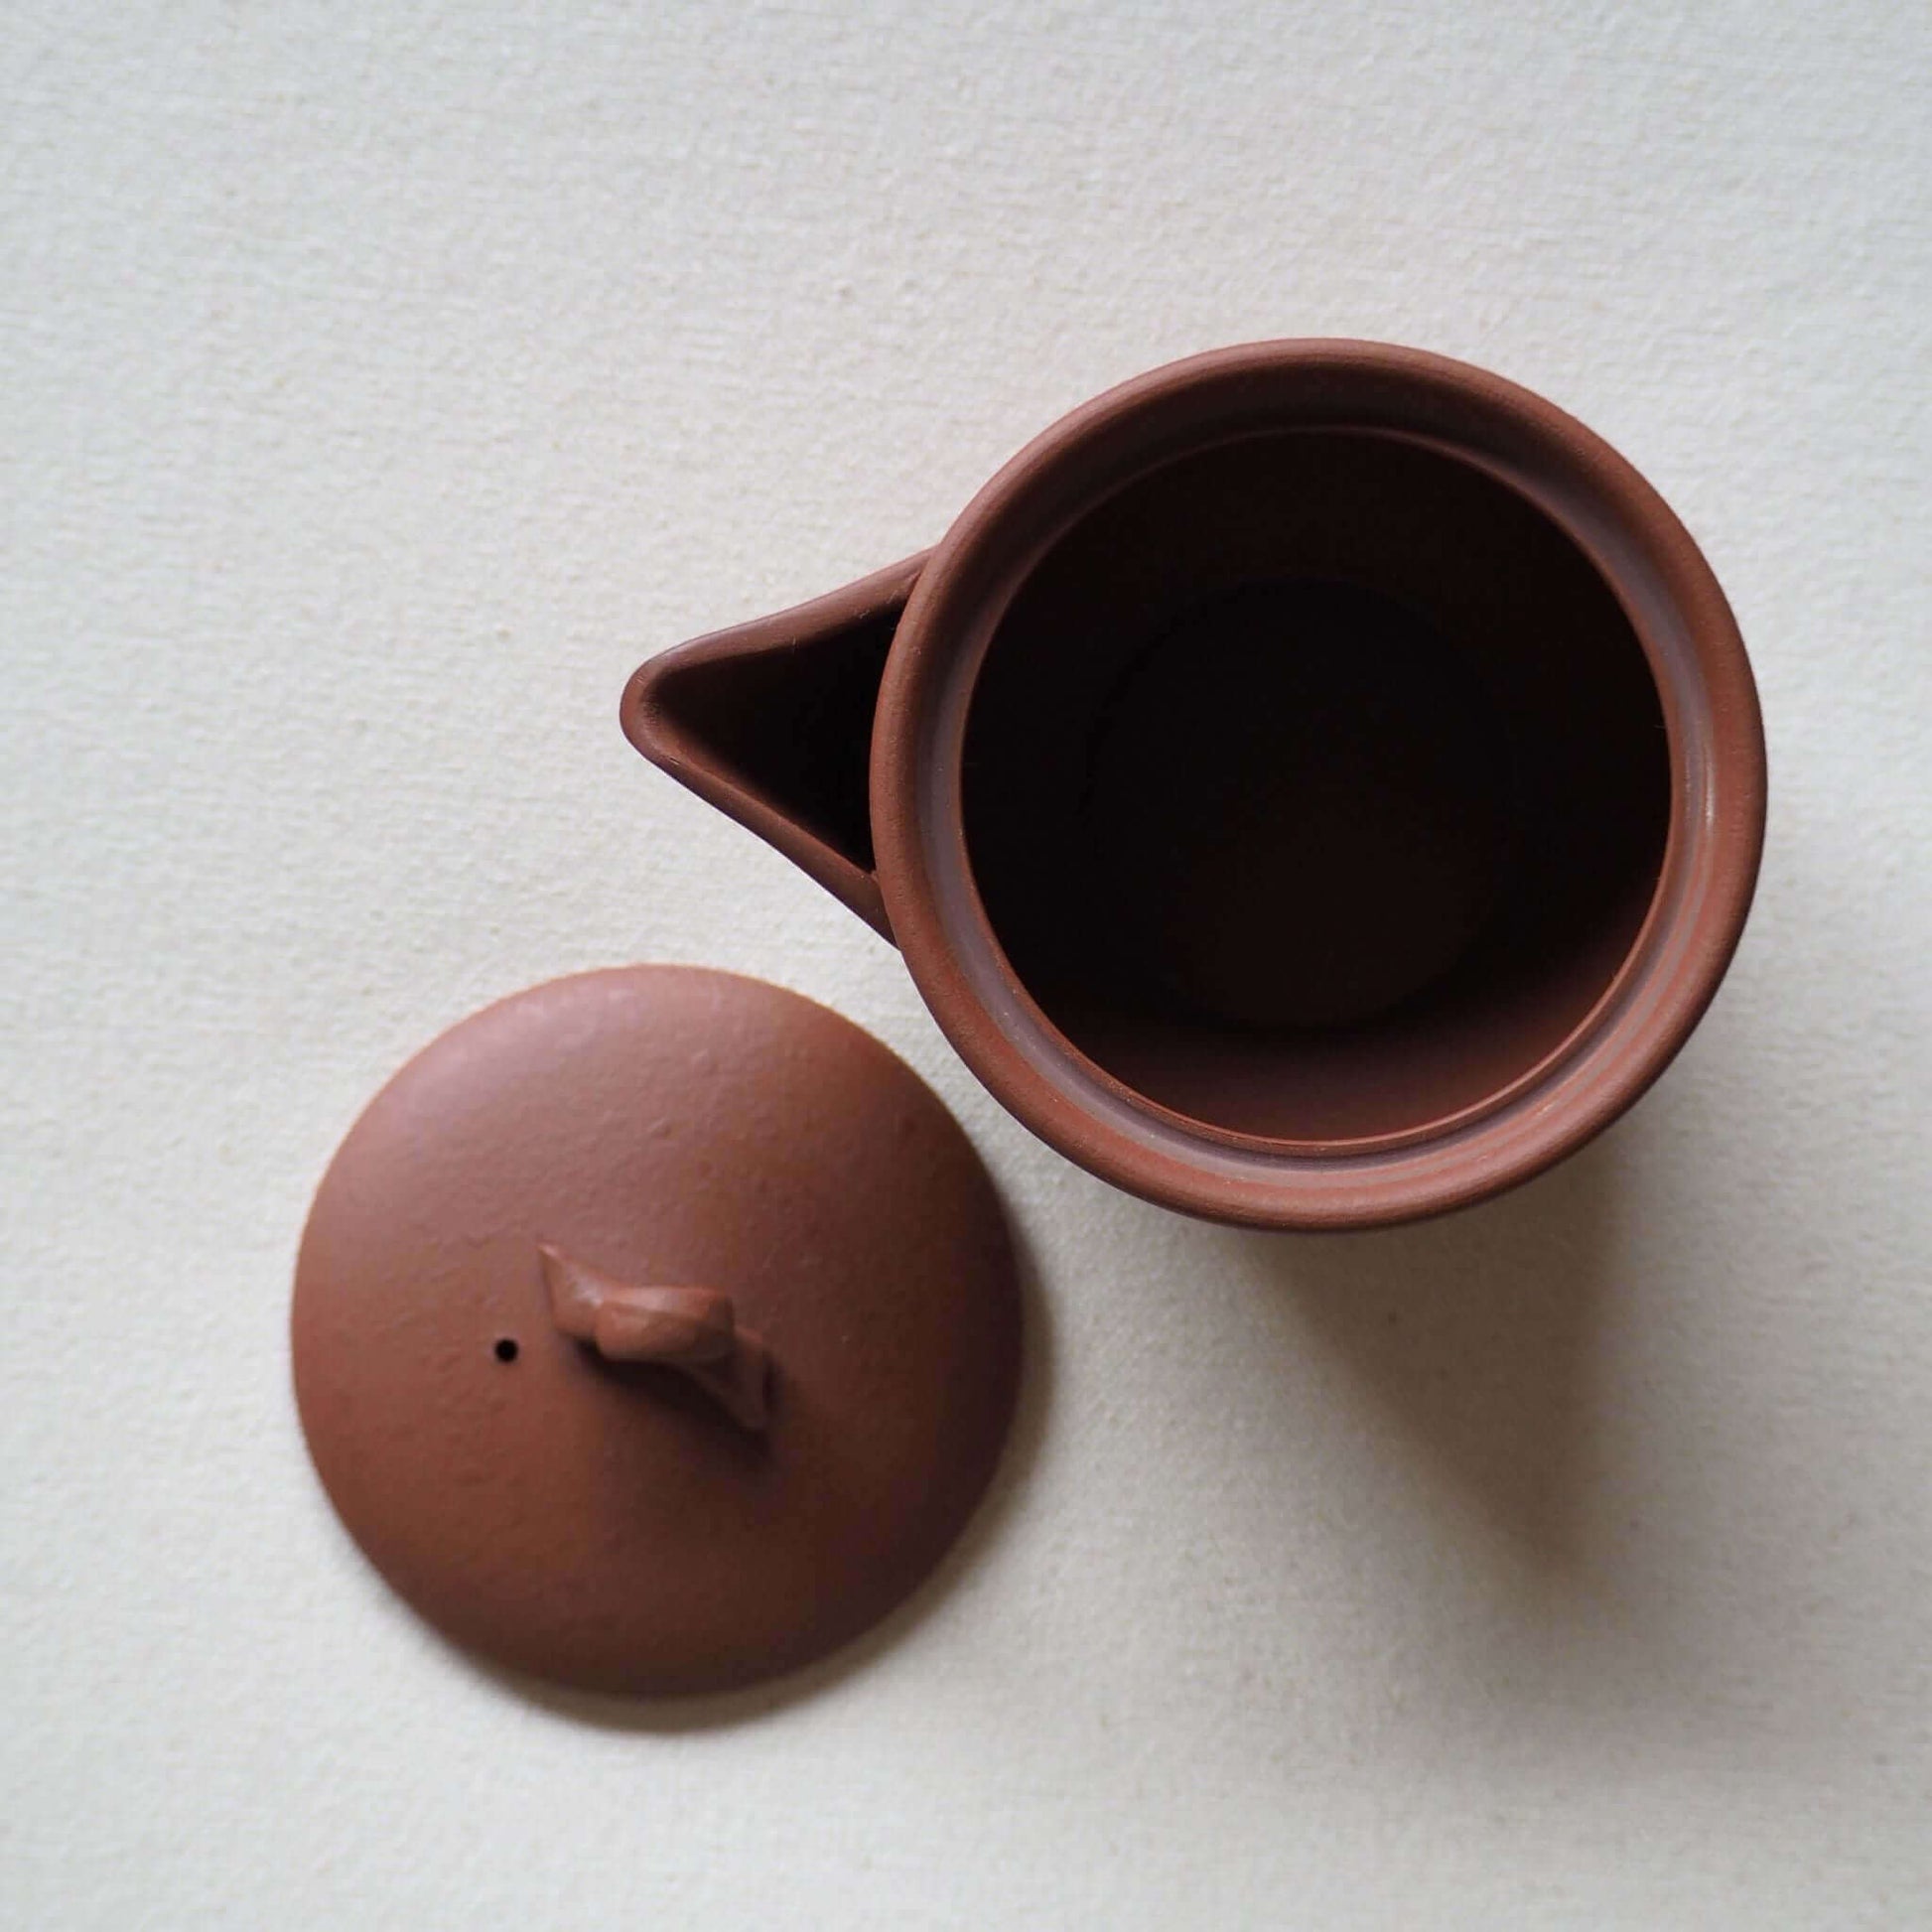 常滑焼の赤茶色の茶器の蓋を開けた状態の写真